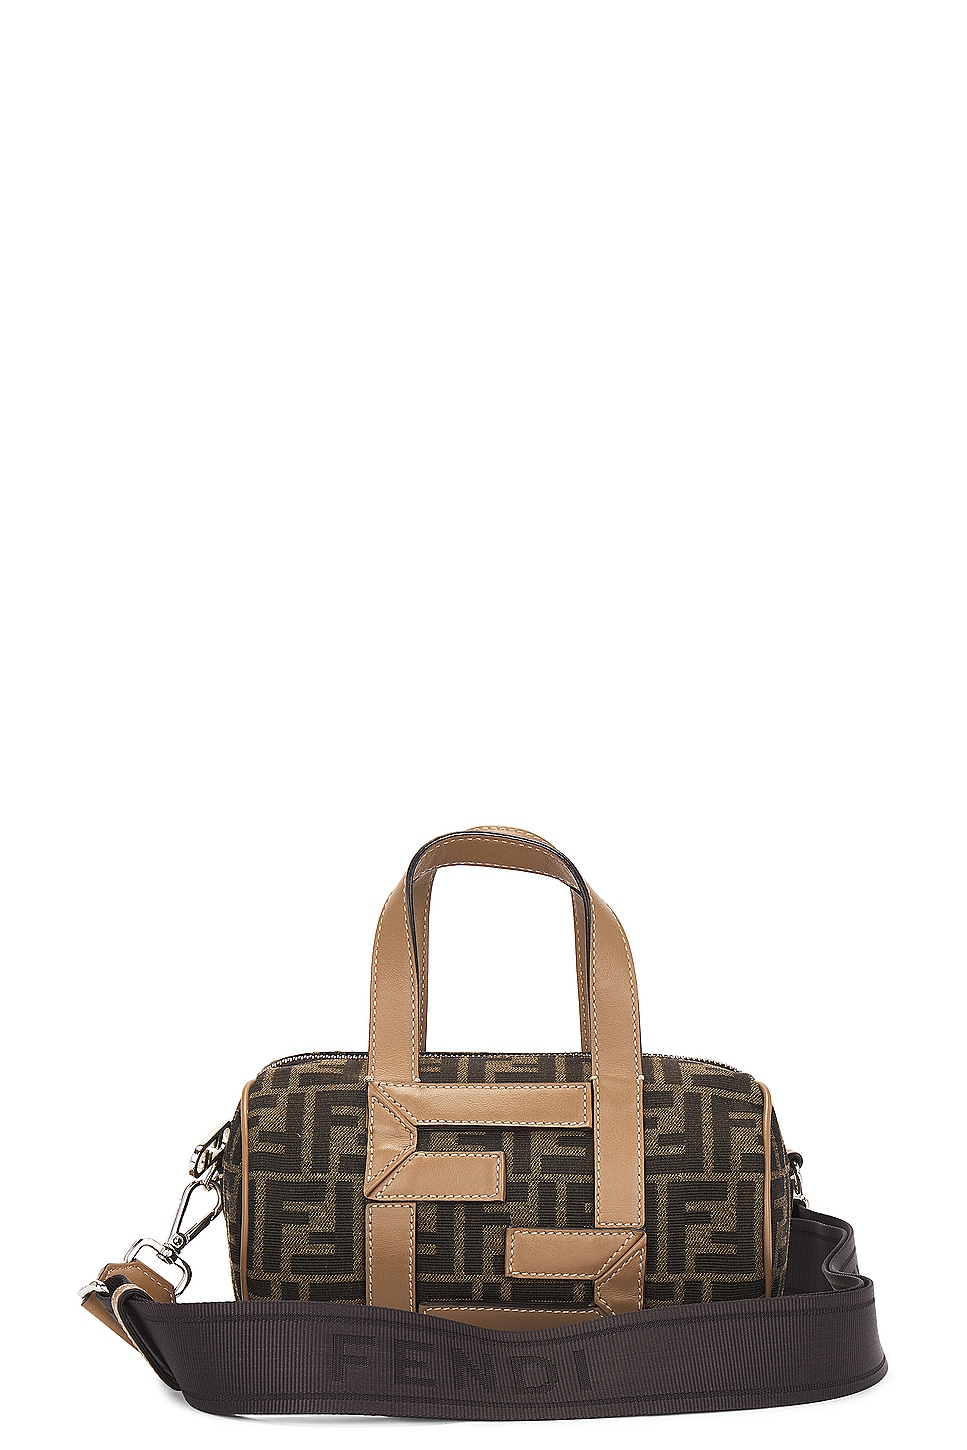 Zucca Handbag in Brown